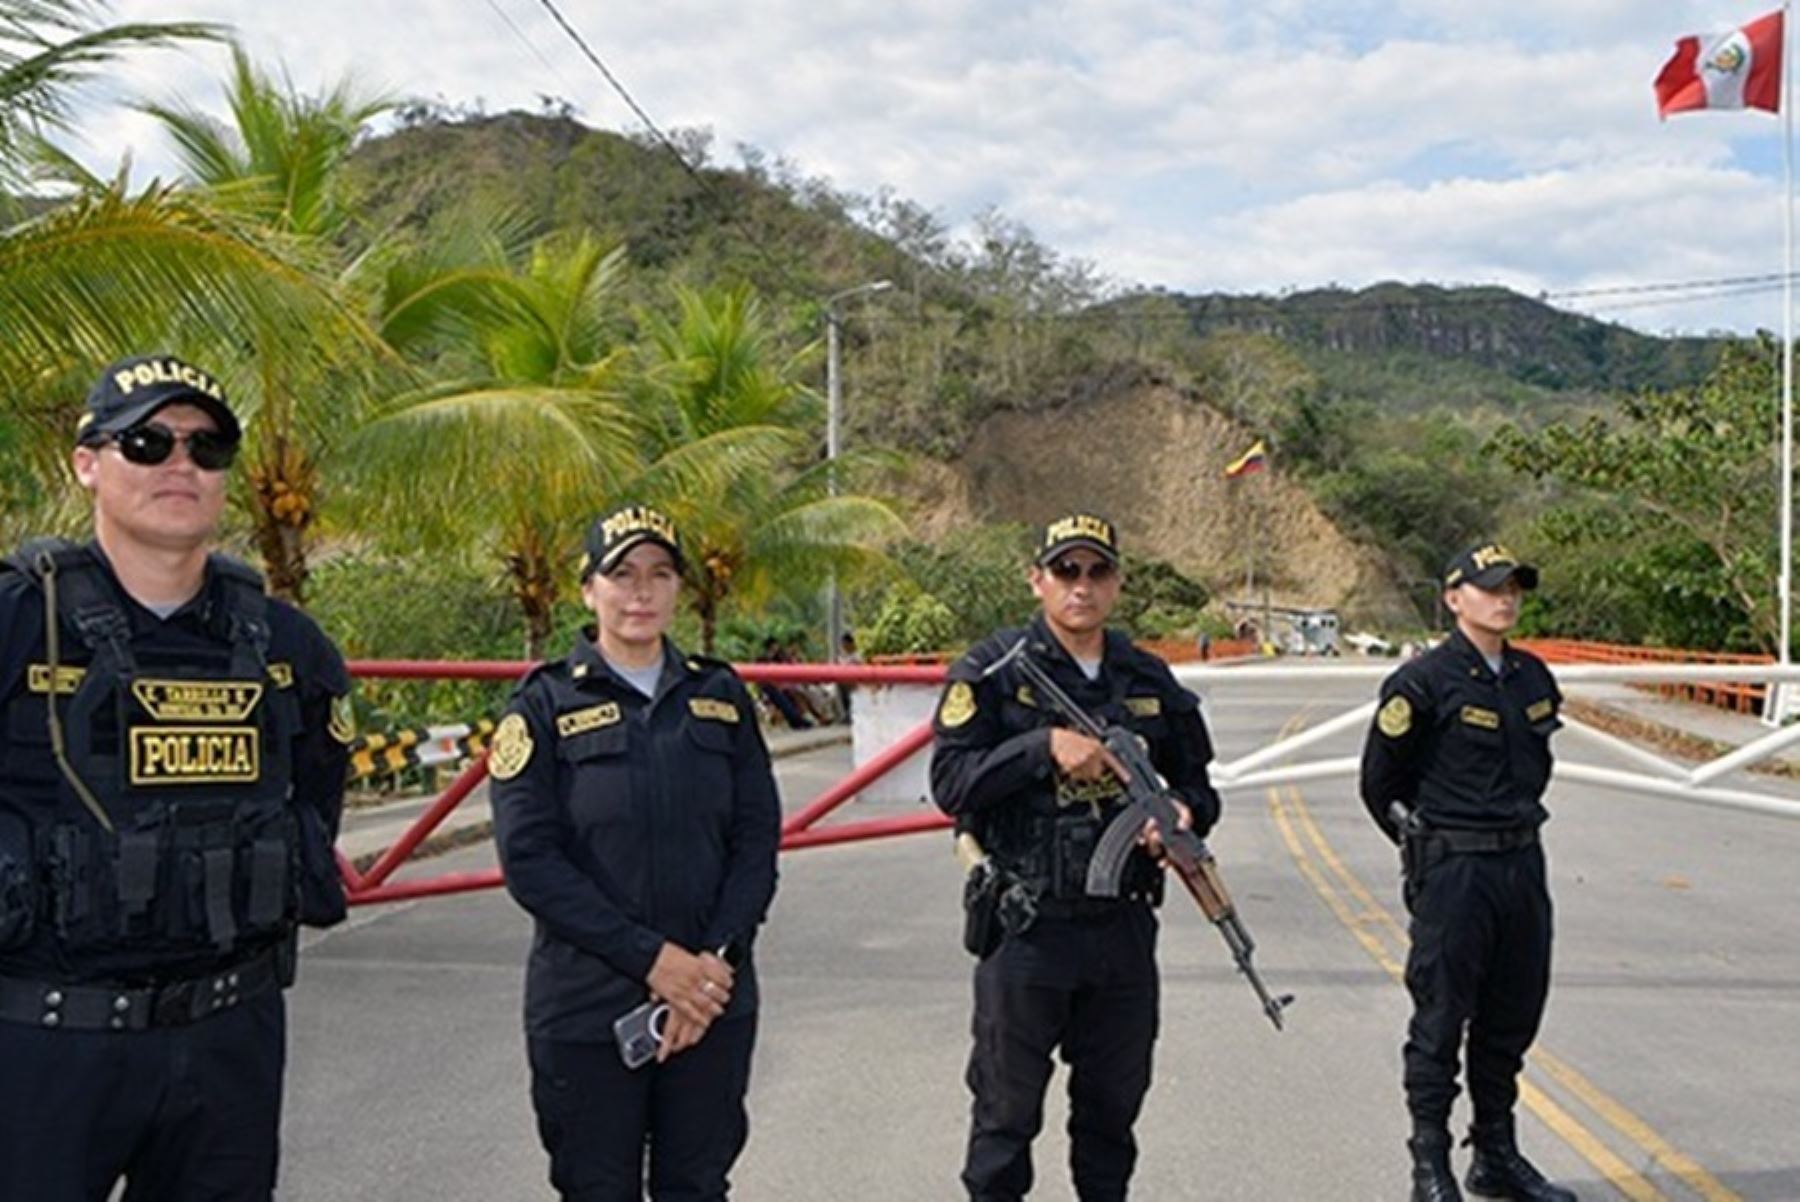 Fronteras más seguras: aumenta presencia policial y operativos en zonas limítrofes